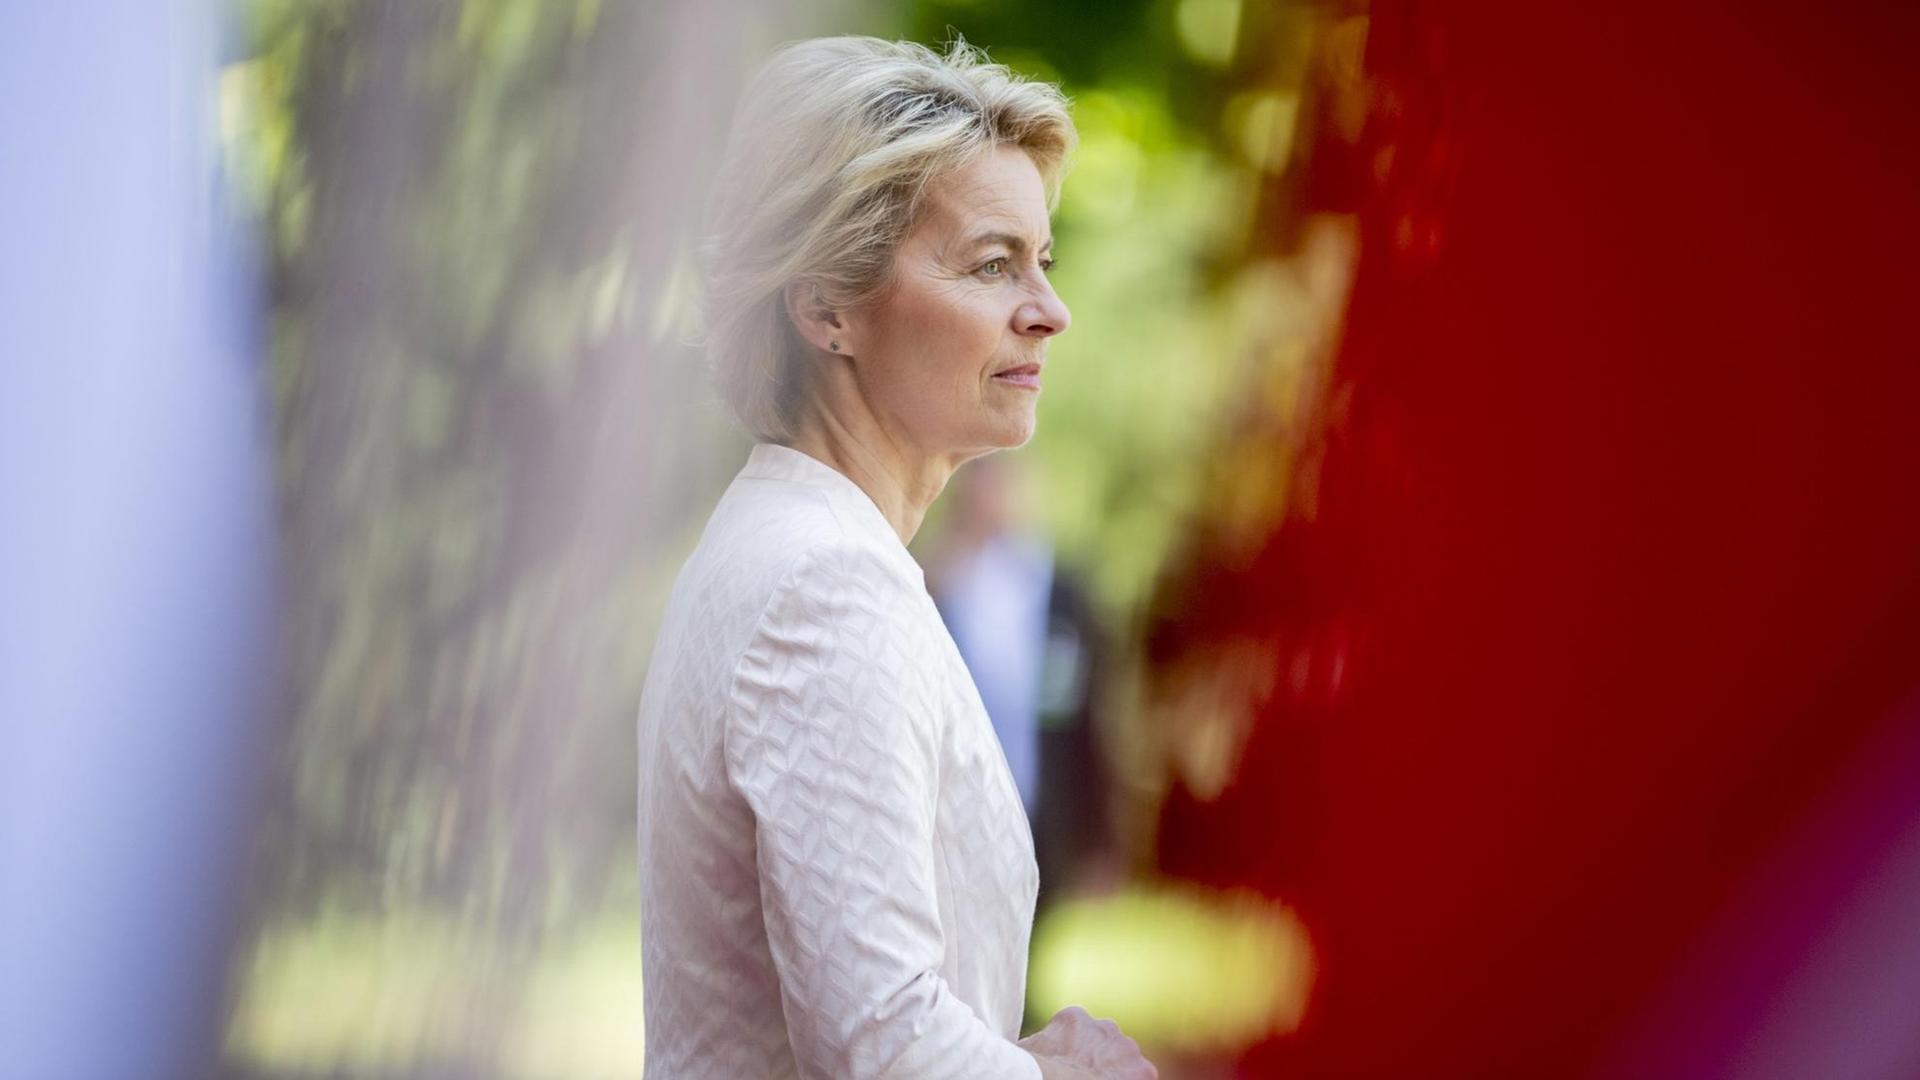 Ursula von der Leyen (CDU), Bundesverteidigungsministerin, steht hinter Flaggen